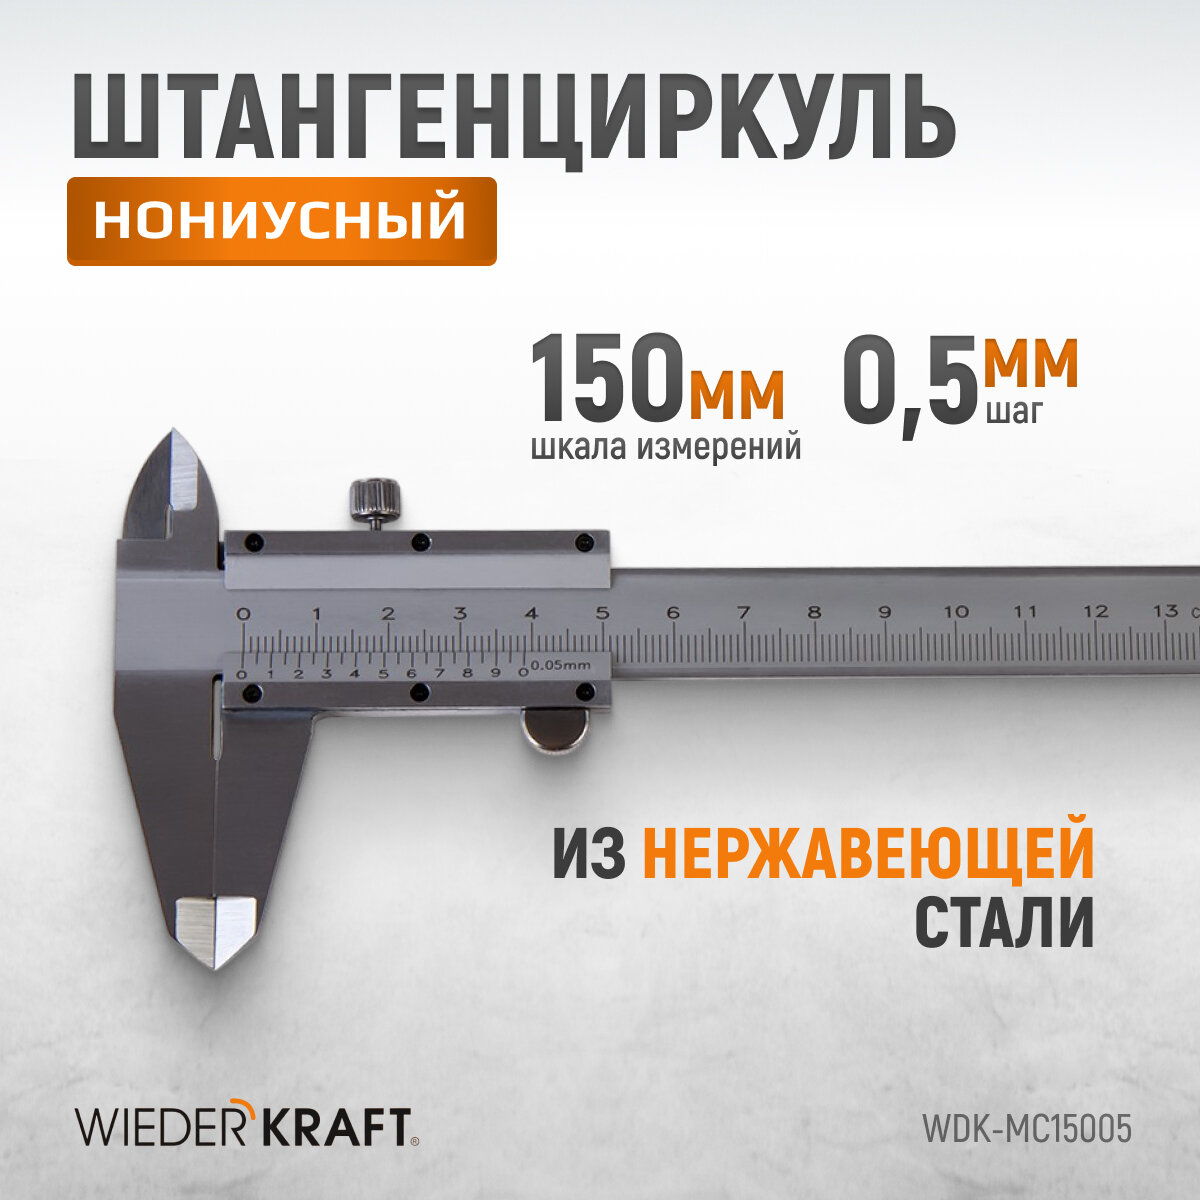 Штангенциркуль WIEDERKRAFT нониусный 0-150 мм, 0,05 мм, тип I, ГОСТ 166-89, со сборной рамкой WDK-MC15005